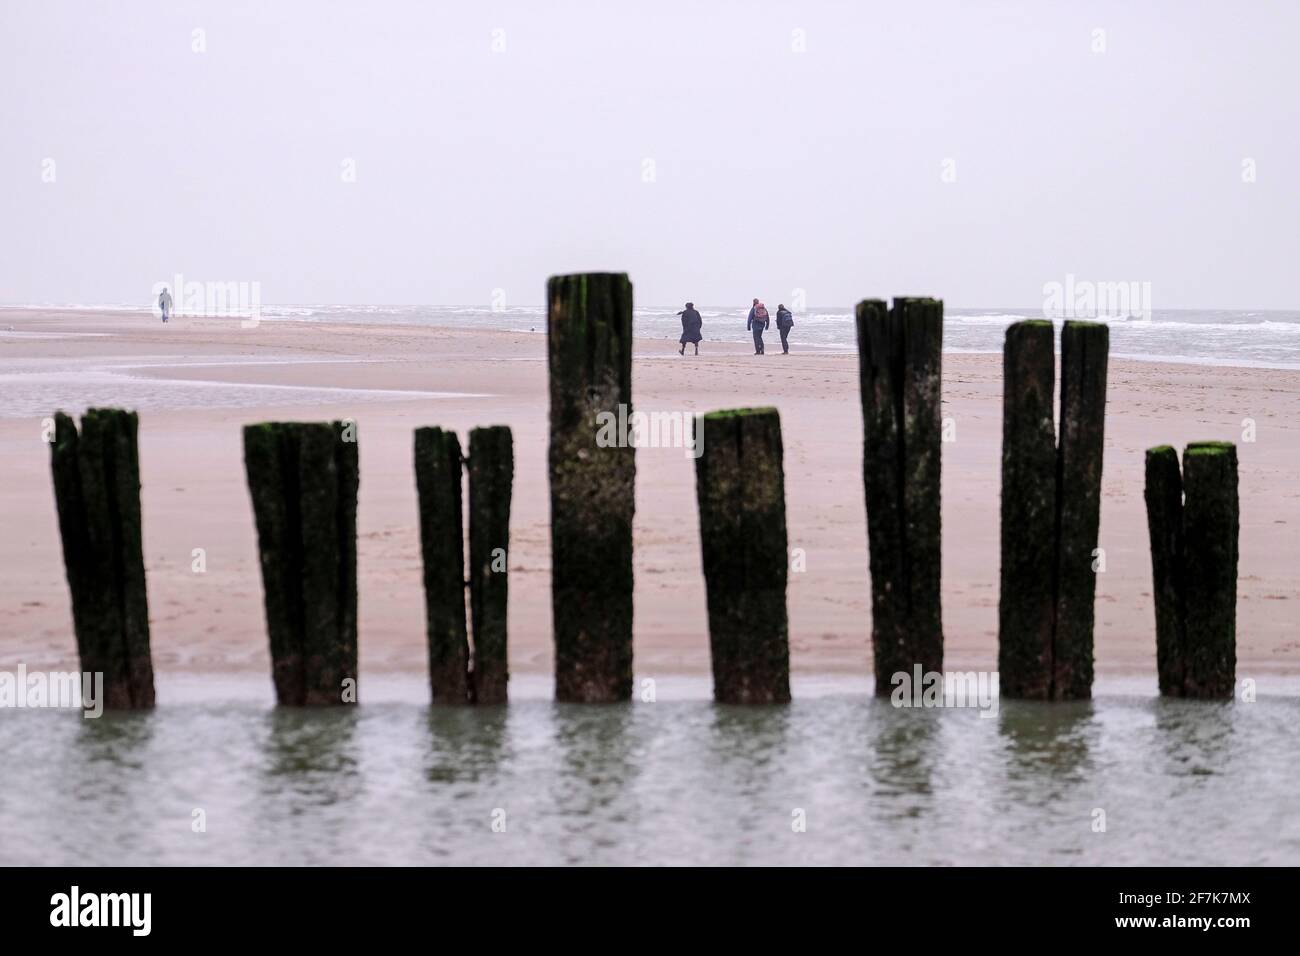 NLD, Niederlande, Nordholland, Bergen aan Zee, 26.12.2018: Strandspaziergaenger am Strand von Bergen aan Zee Foto Stock